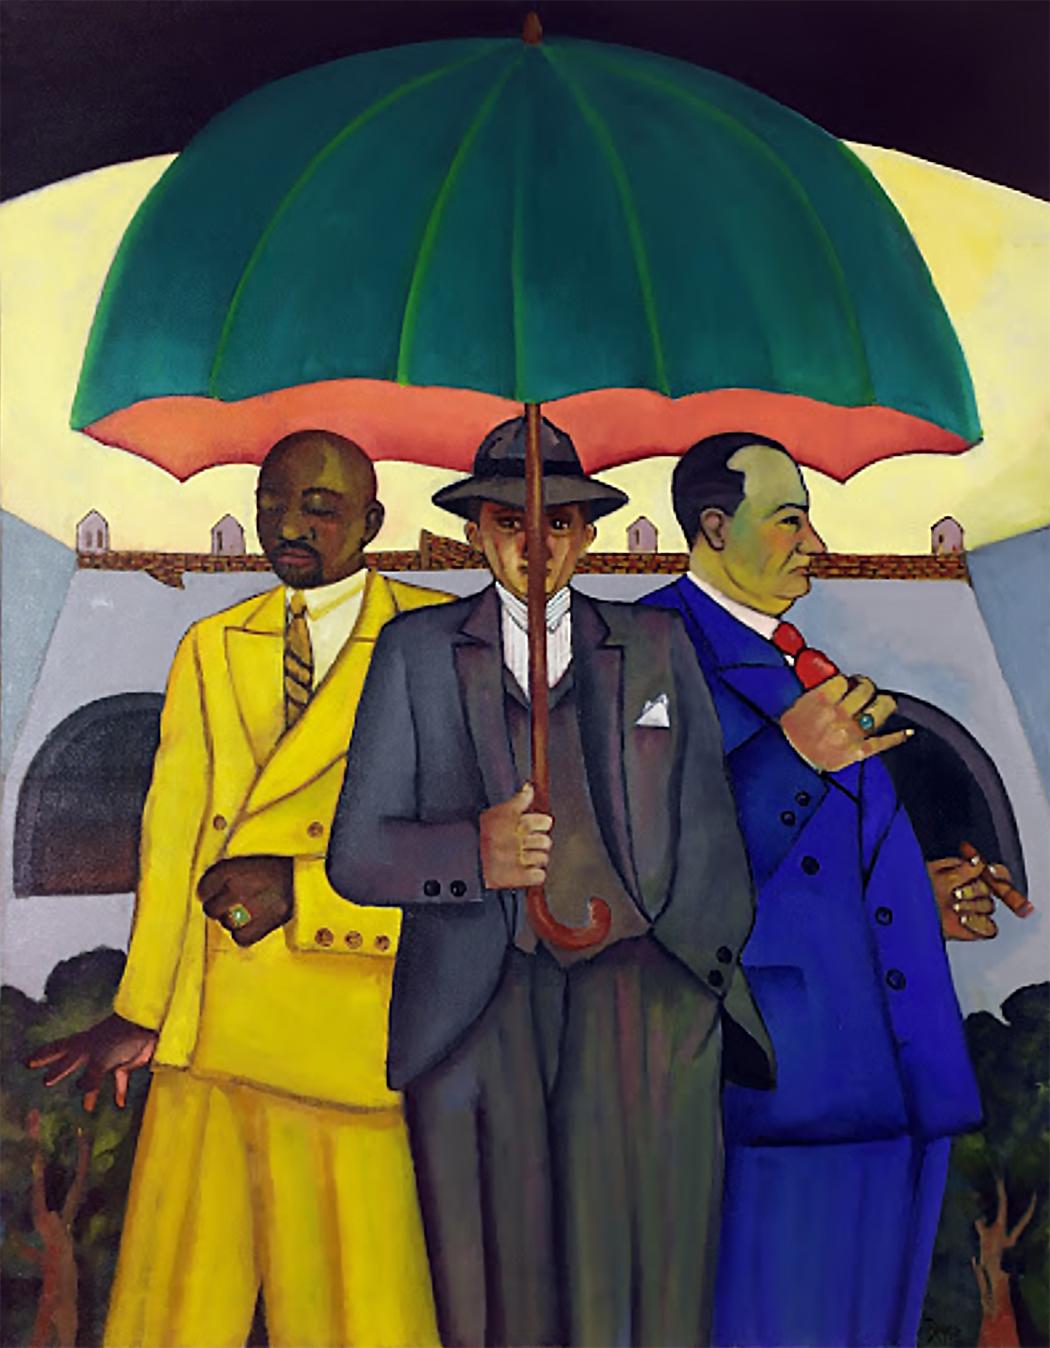 Trio in Rio, bright color oil painting of figure umbrella men in suits